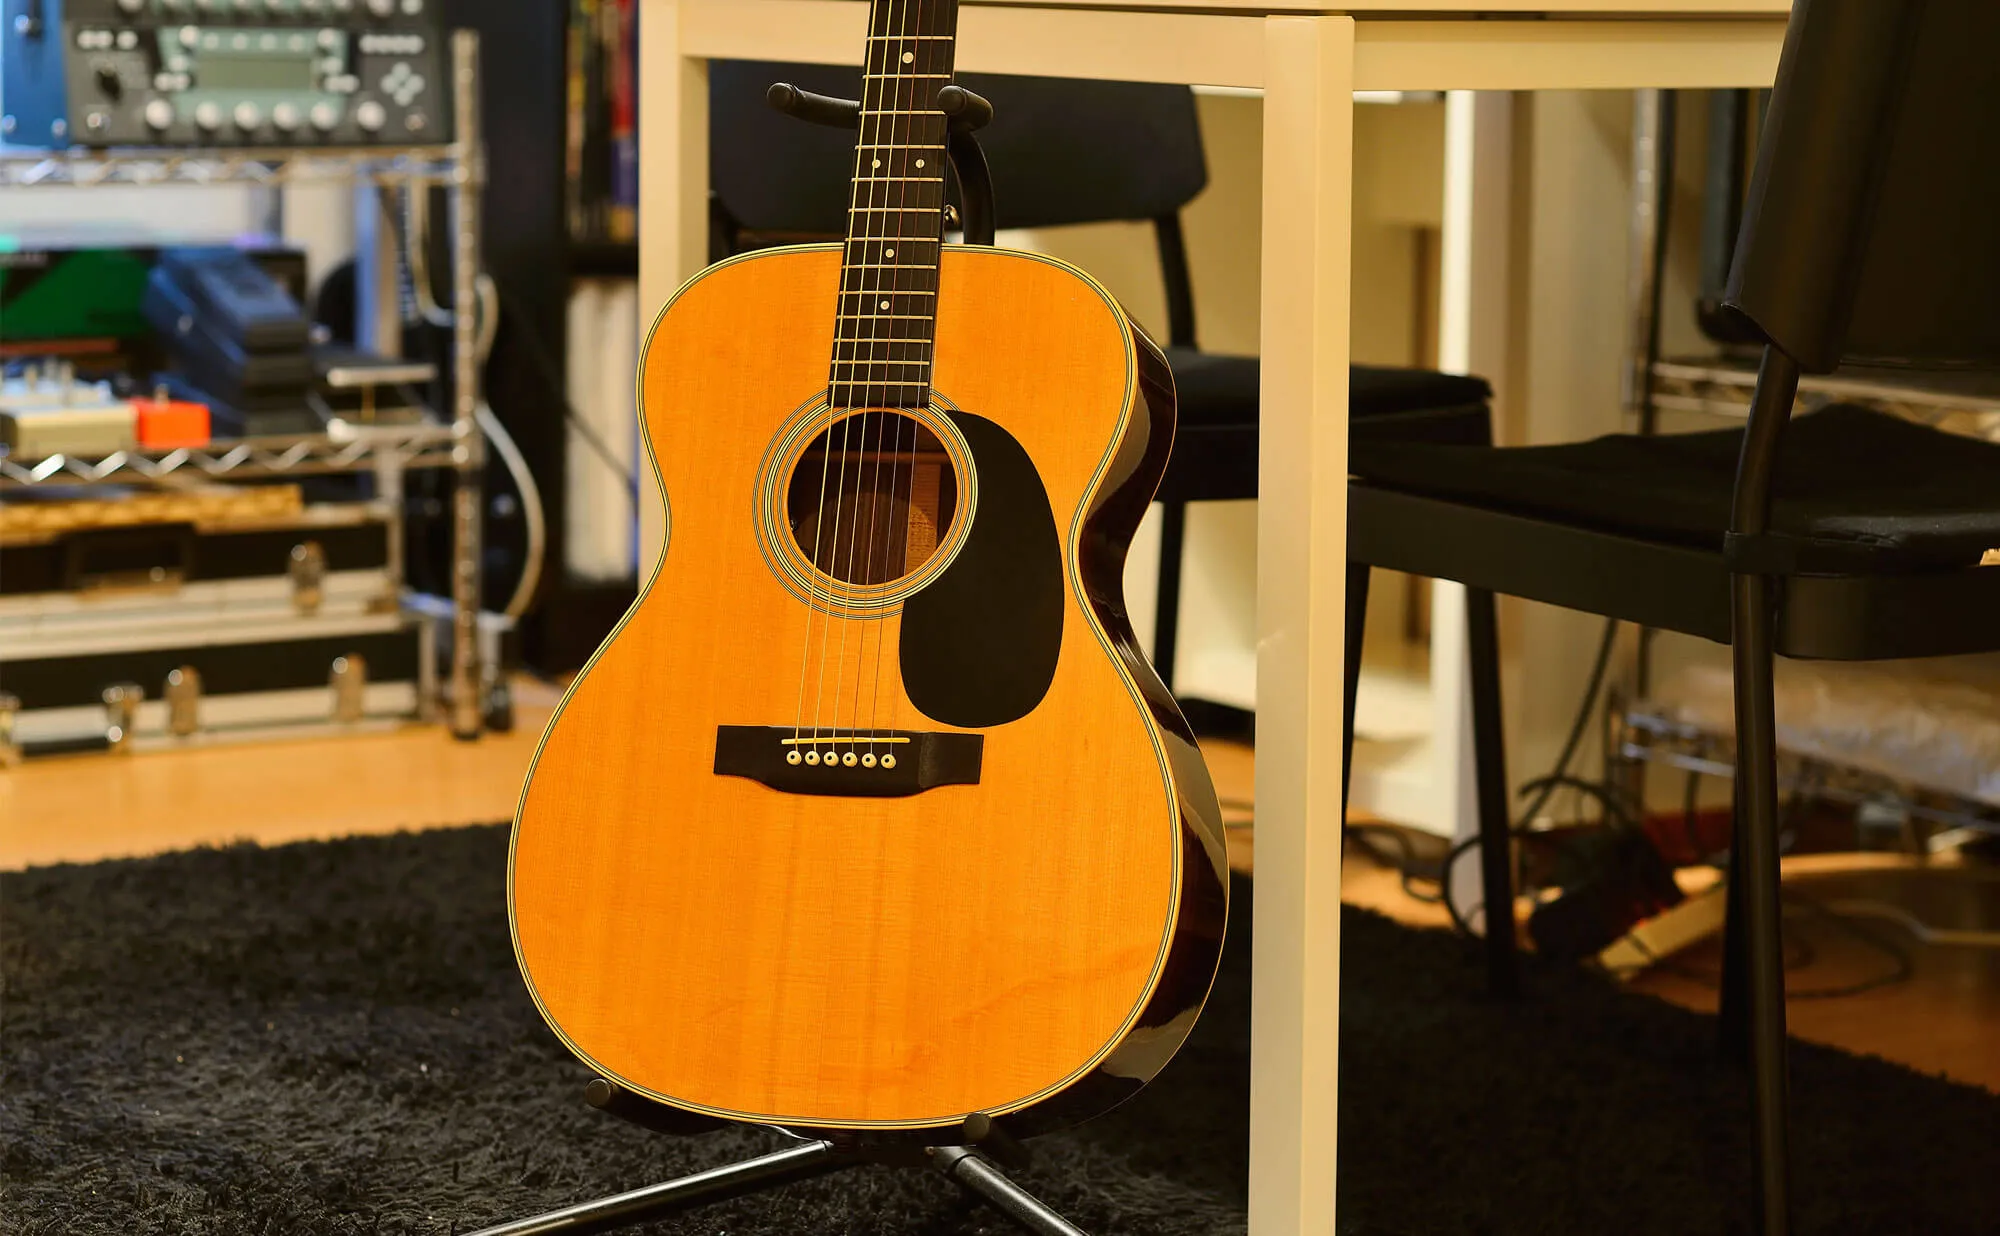 国分寺ギター教室 | 60分完全個人レッスンのエルギタースクール